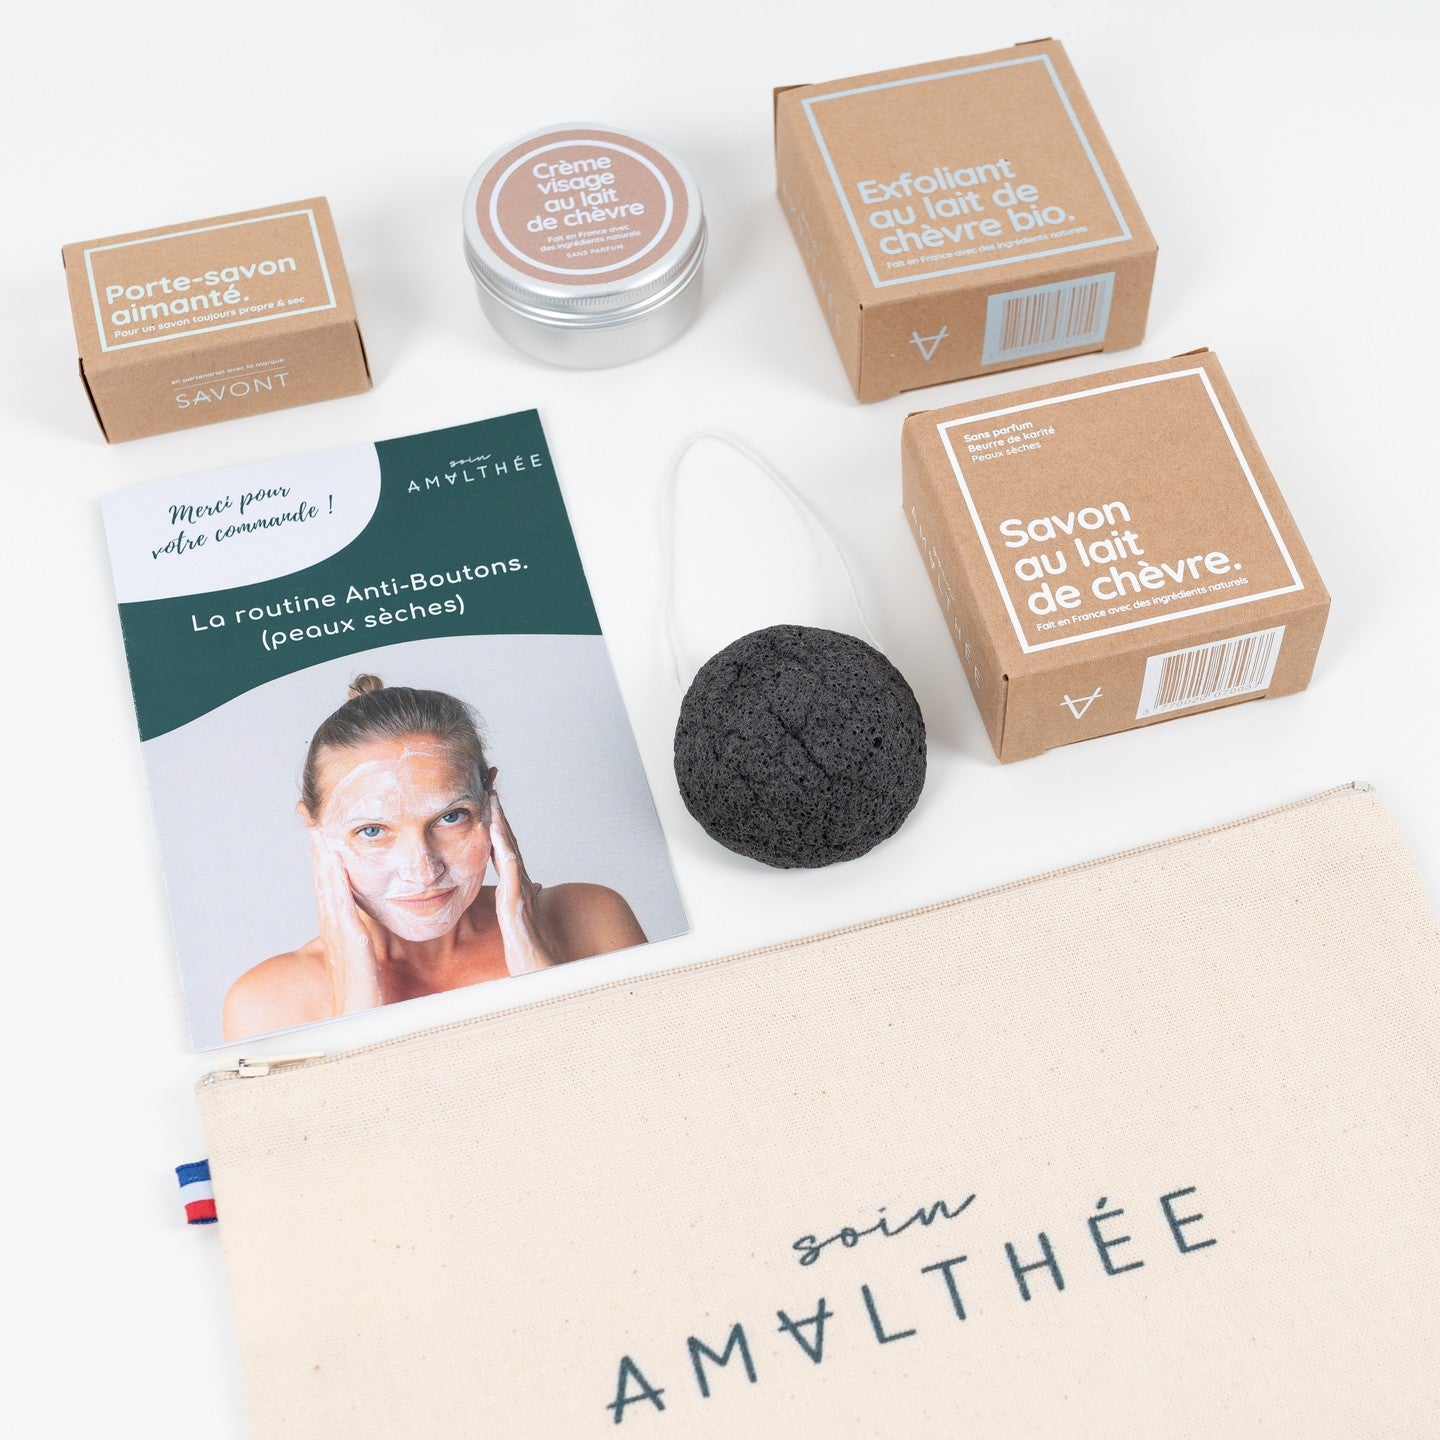 Crème visage anti-boutons - Lait de chèvre - Fabriquée en France